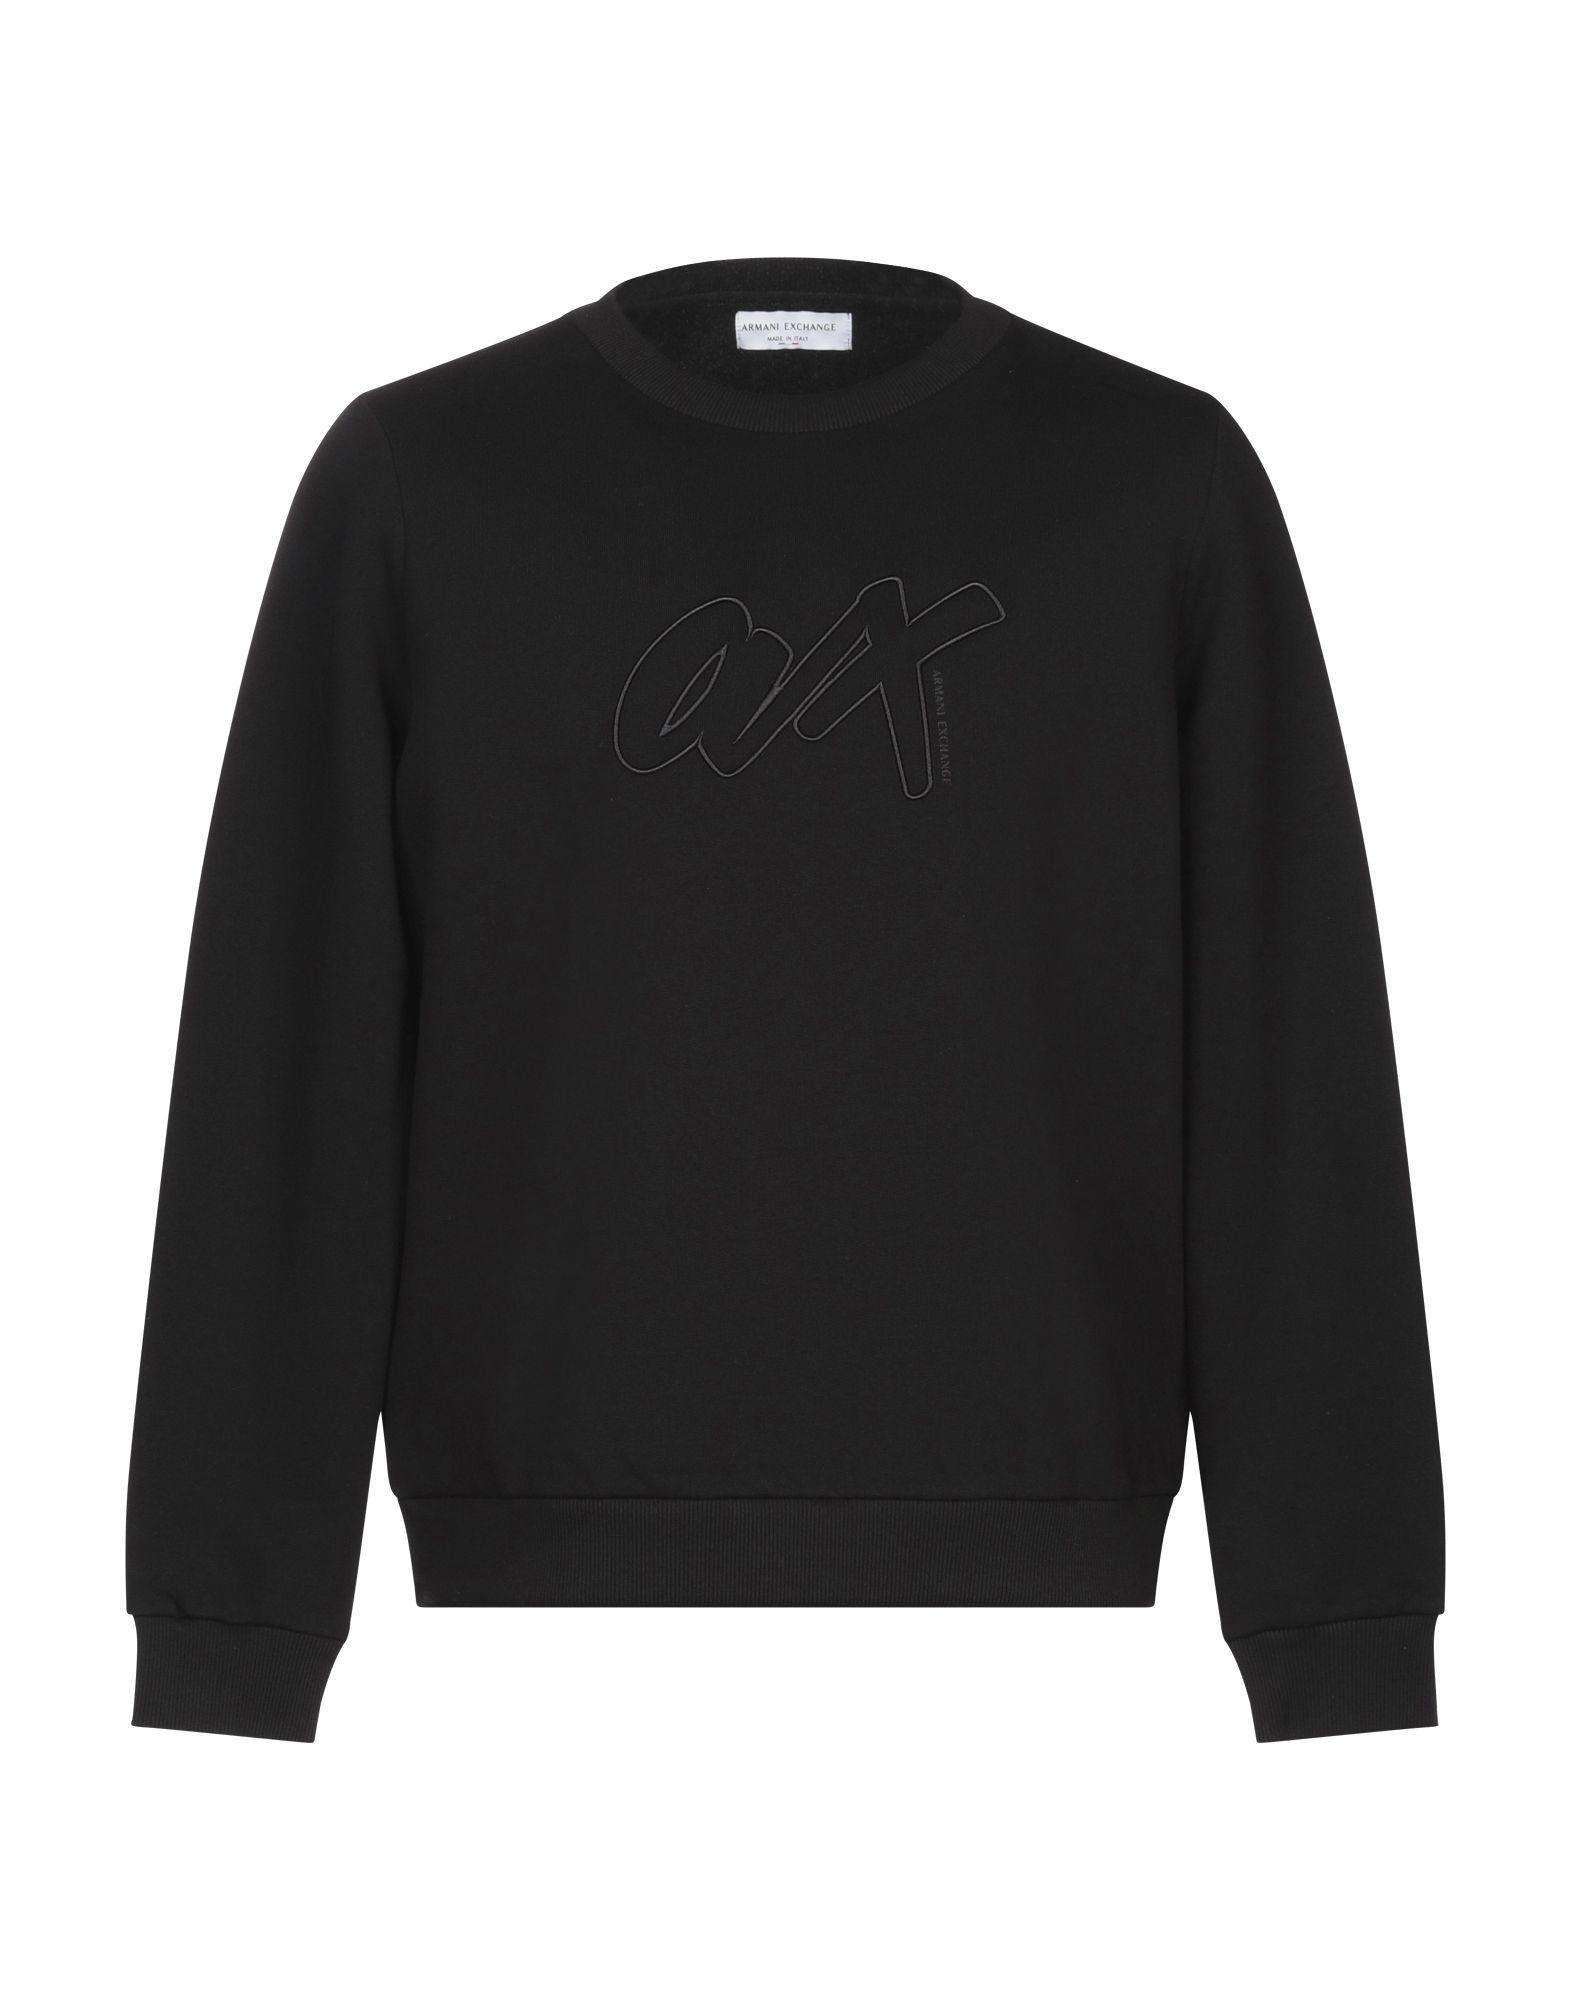 Armani Exchange Fleece Sweatshirt in Black for Men - Lyst